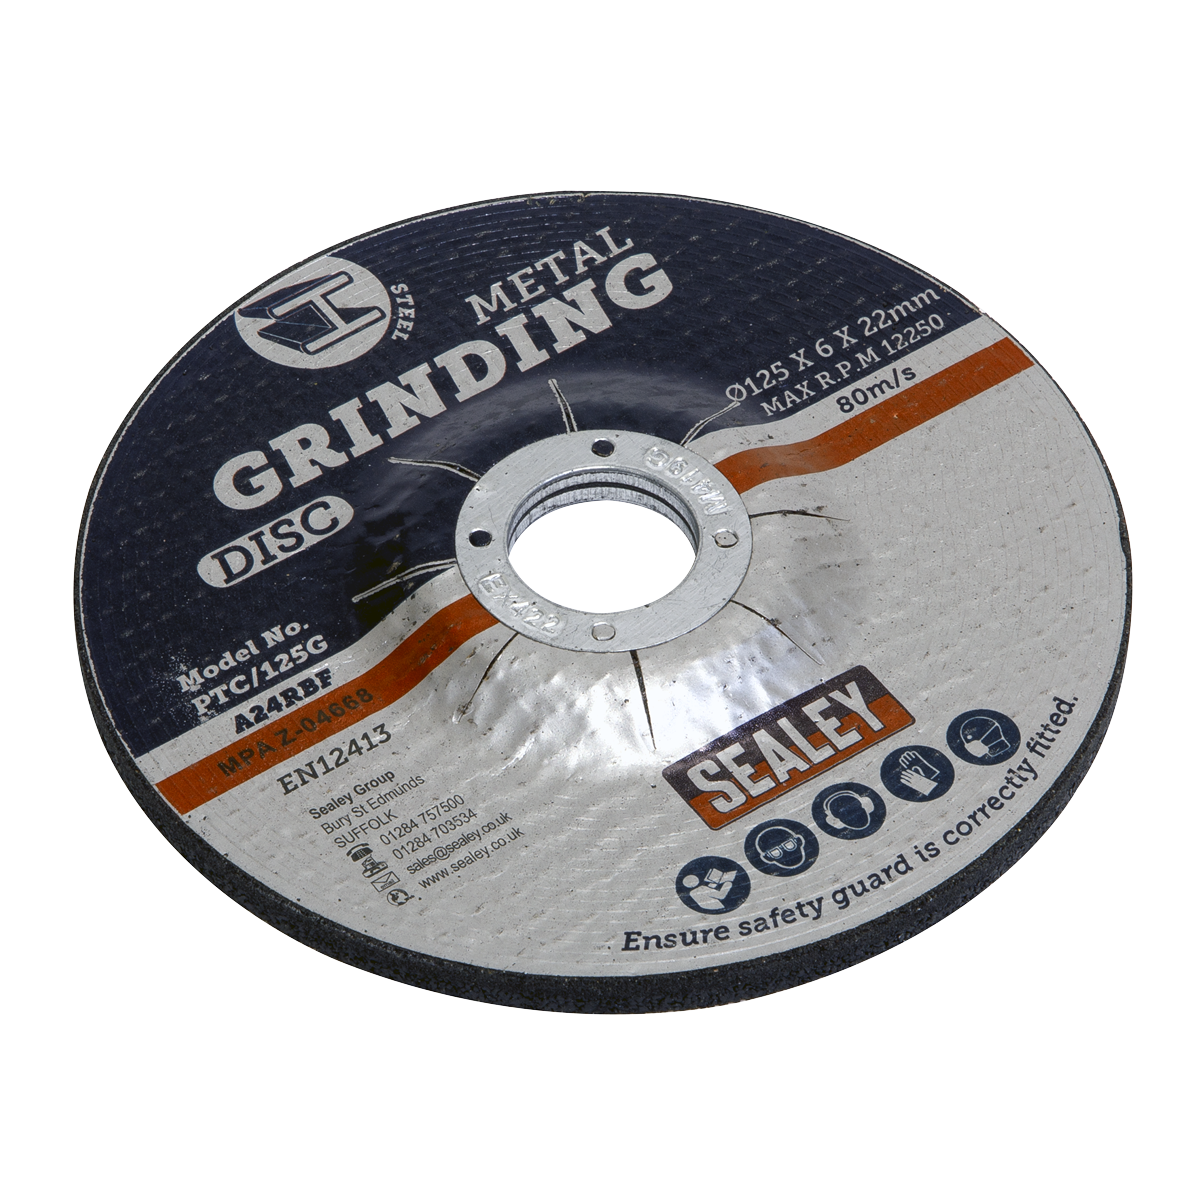 Grinding Disc Ø125 x 6mm Ø22mm Bore - PTC/125G - Farming Parts